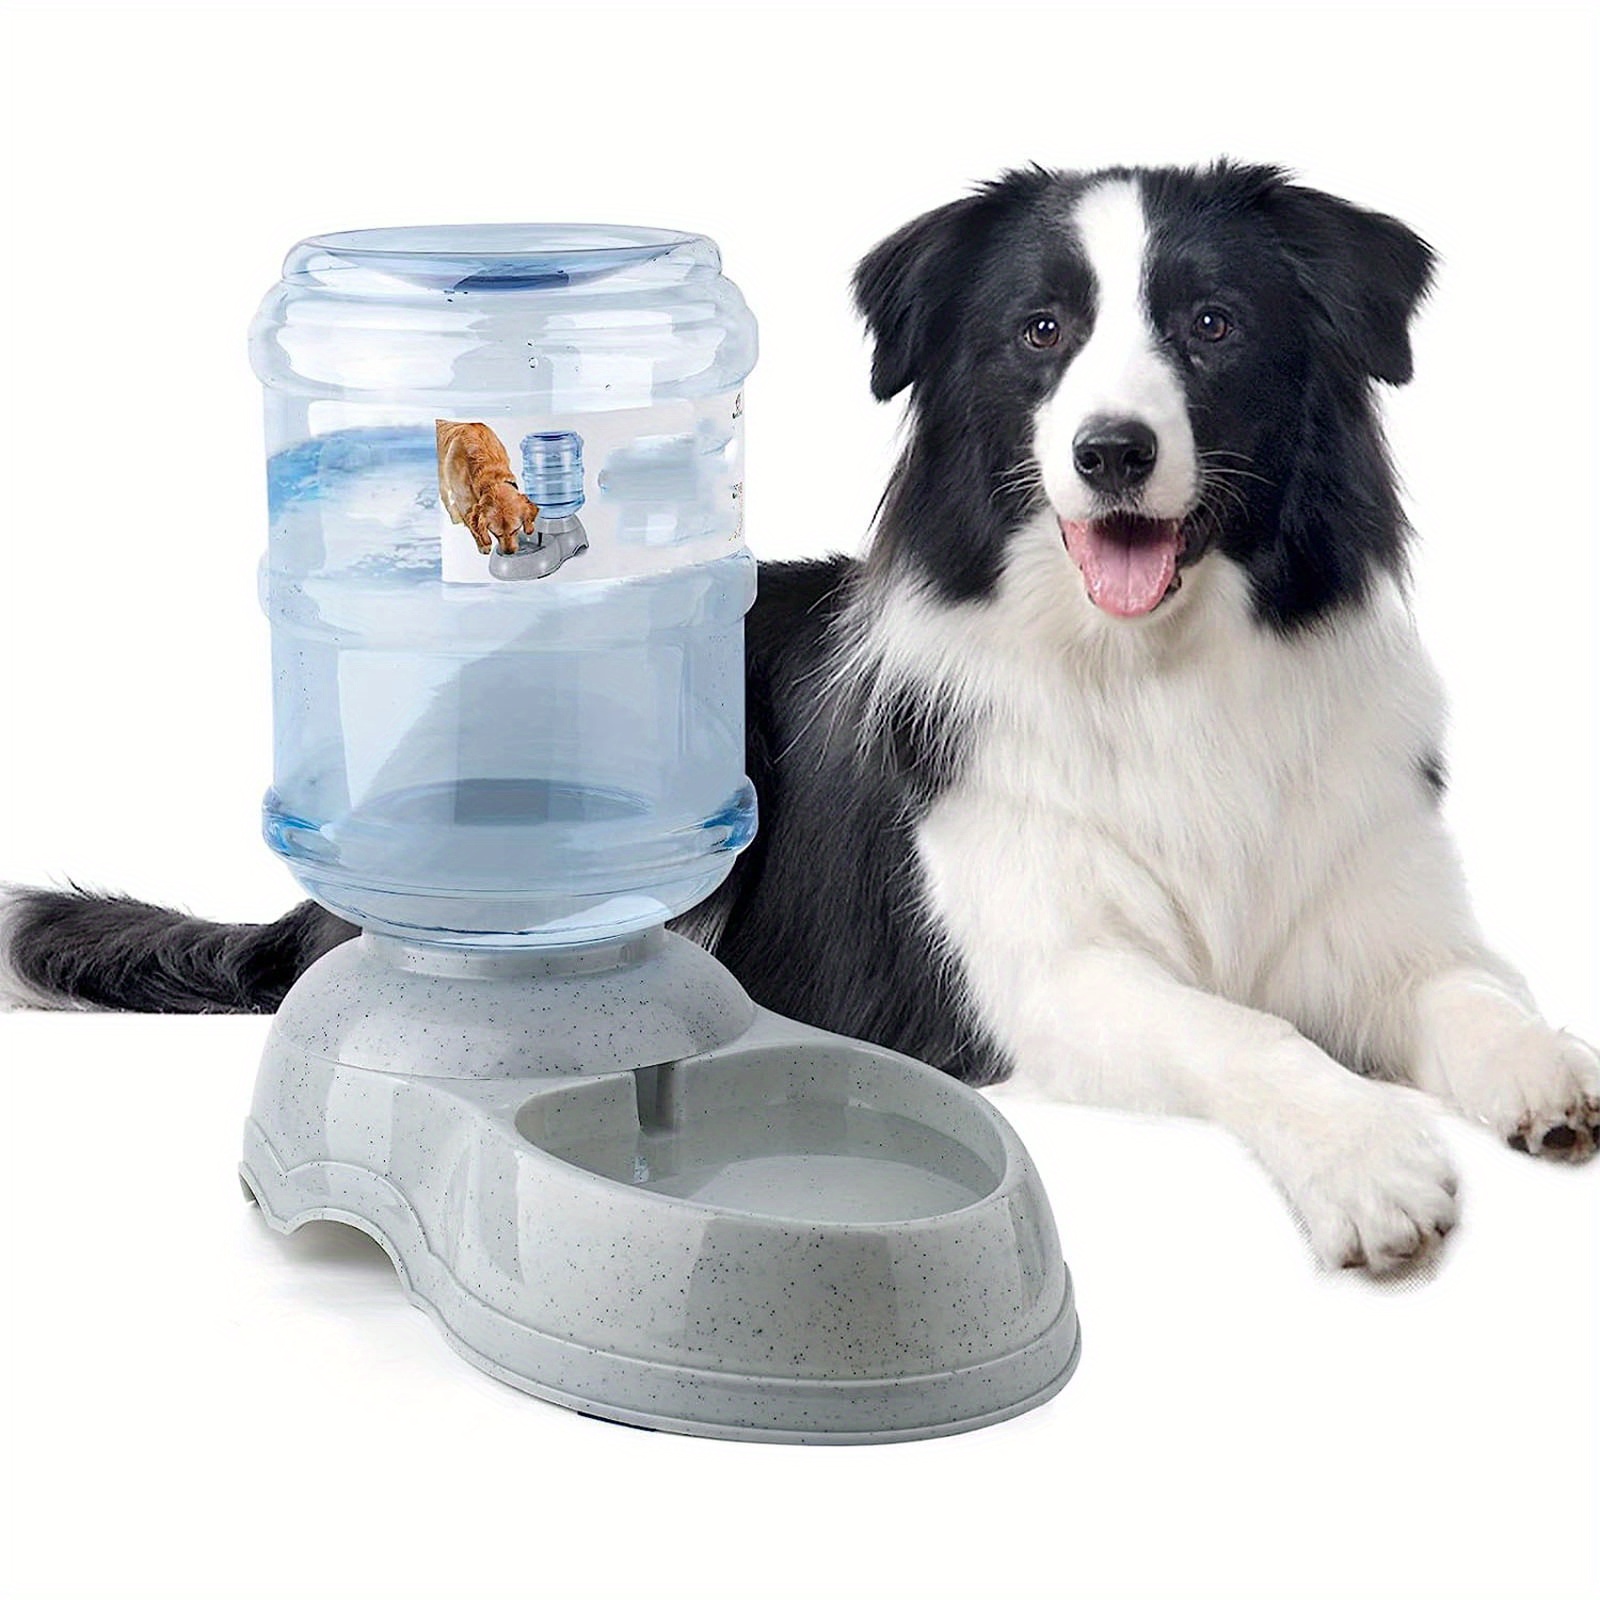  Dispensador de agua para perros, estación dispensadora de agua  para mascotas de 3 galones/11L para perros y gatos grandes, alimentador  automático por gravedad, fuente de bebida para perros de gran tamaño (